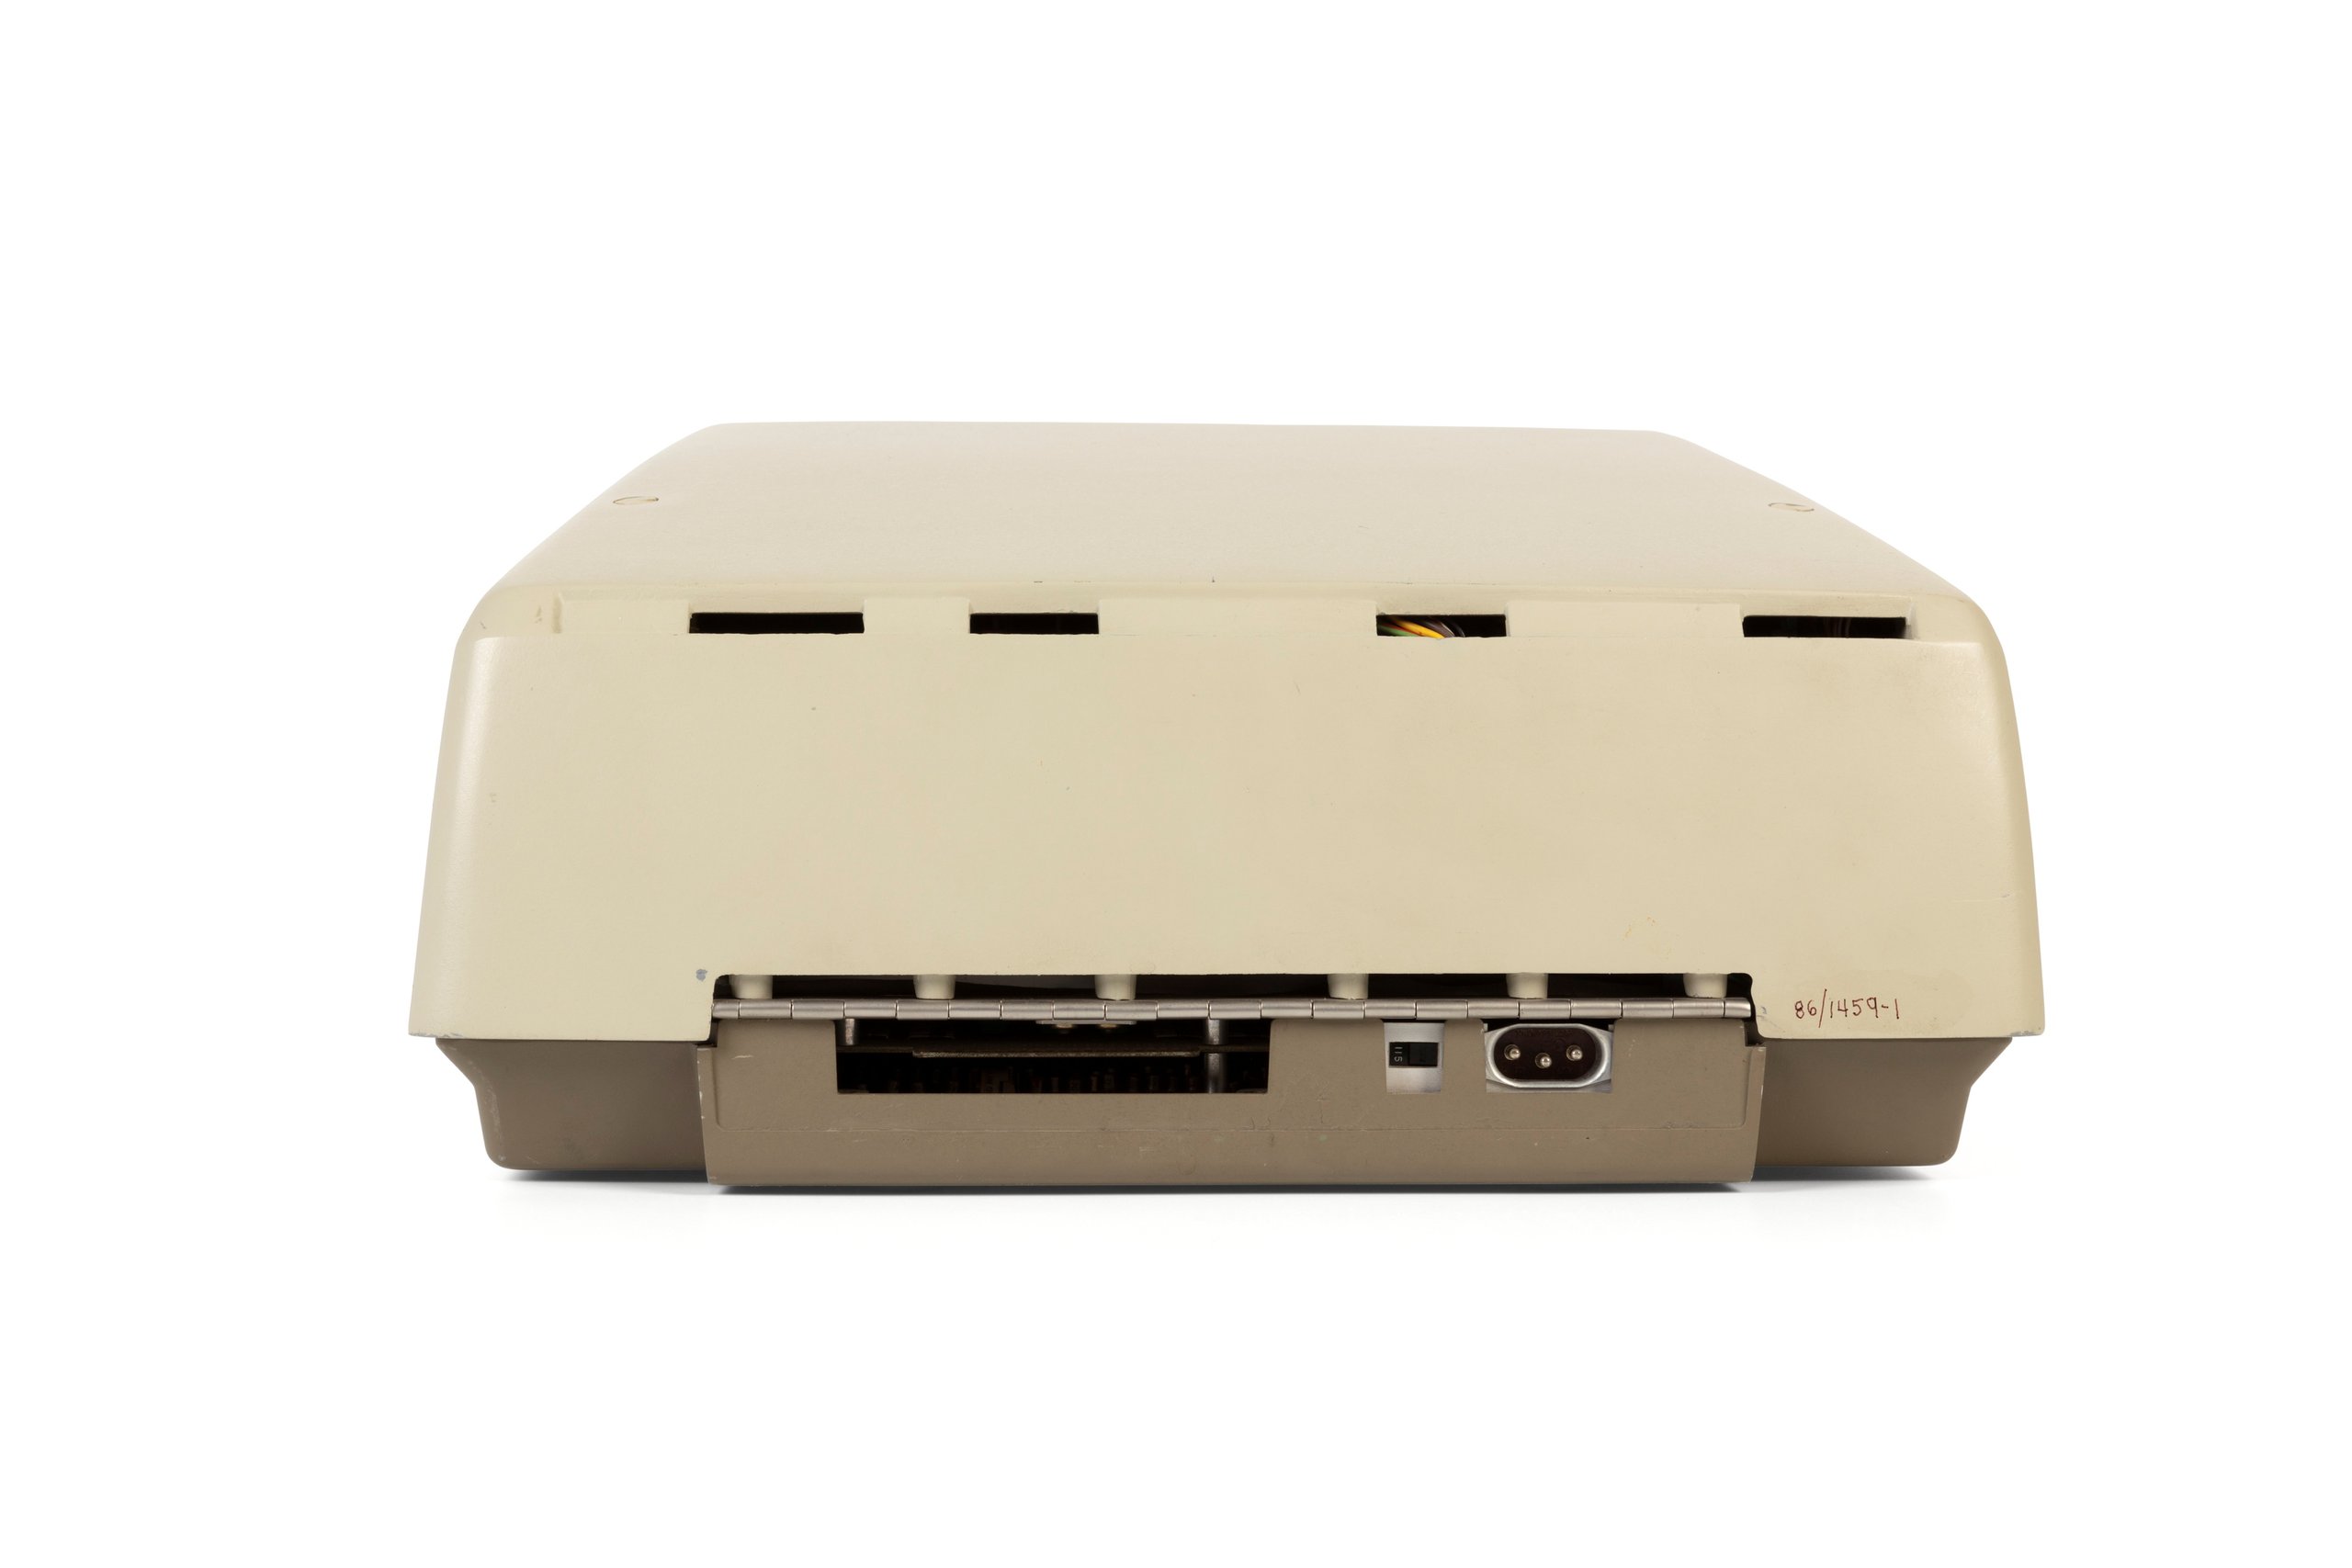 Hewlett Packard 9100A programmable calculator